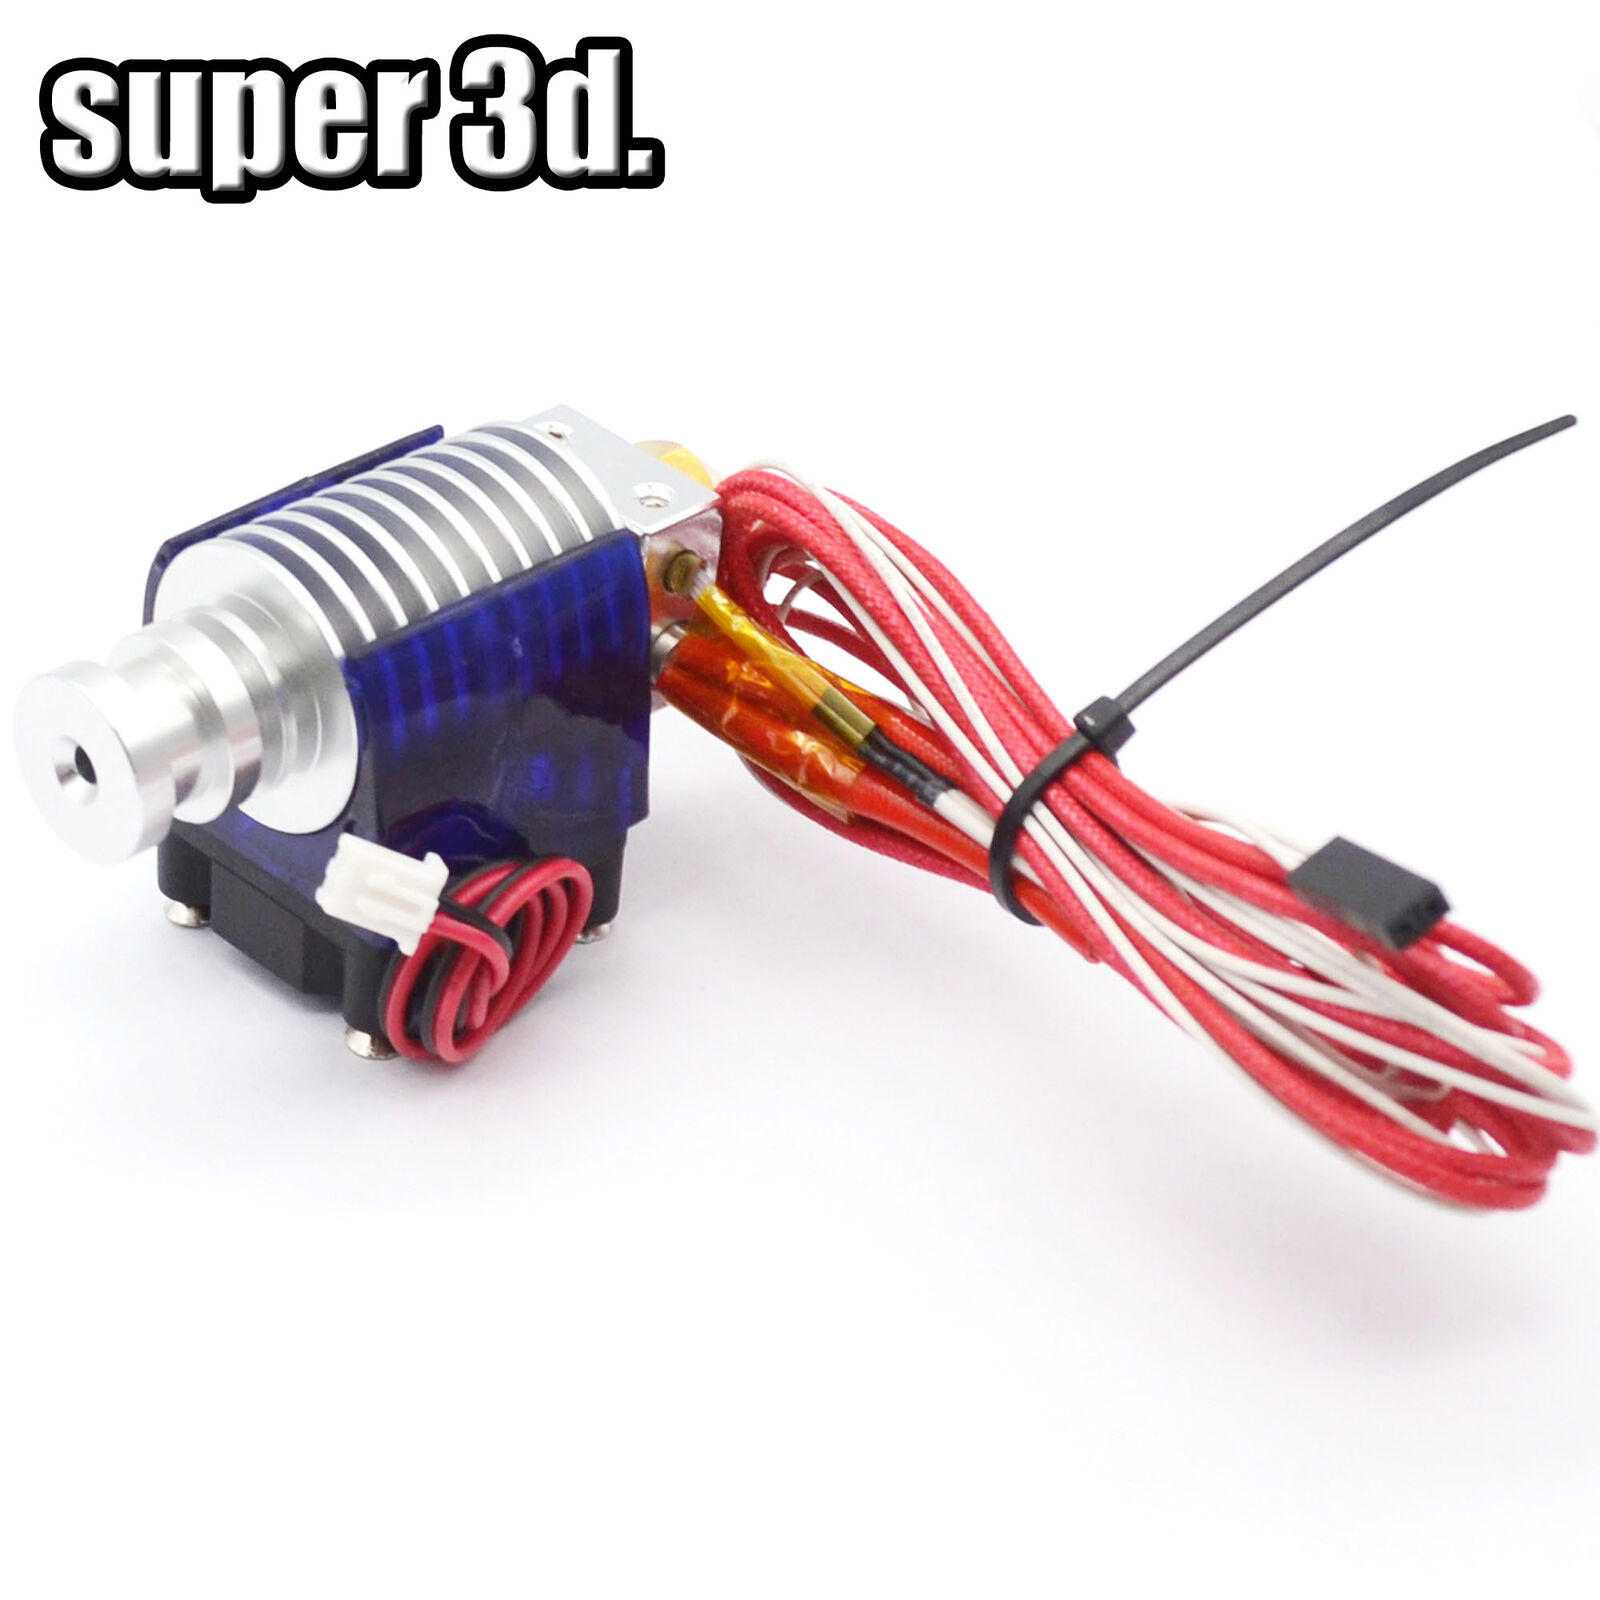 3D Printer E3D V5 J-head Hotend 12/24V Wade Extruder for 1.75/3mm Filament